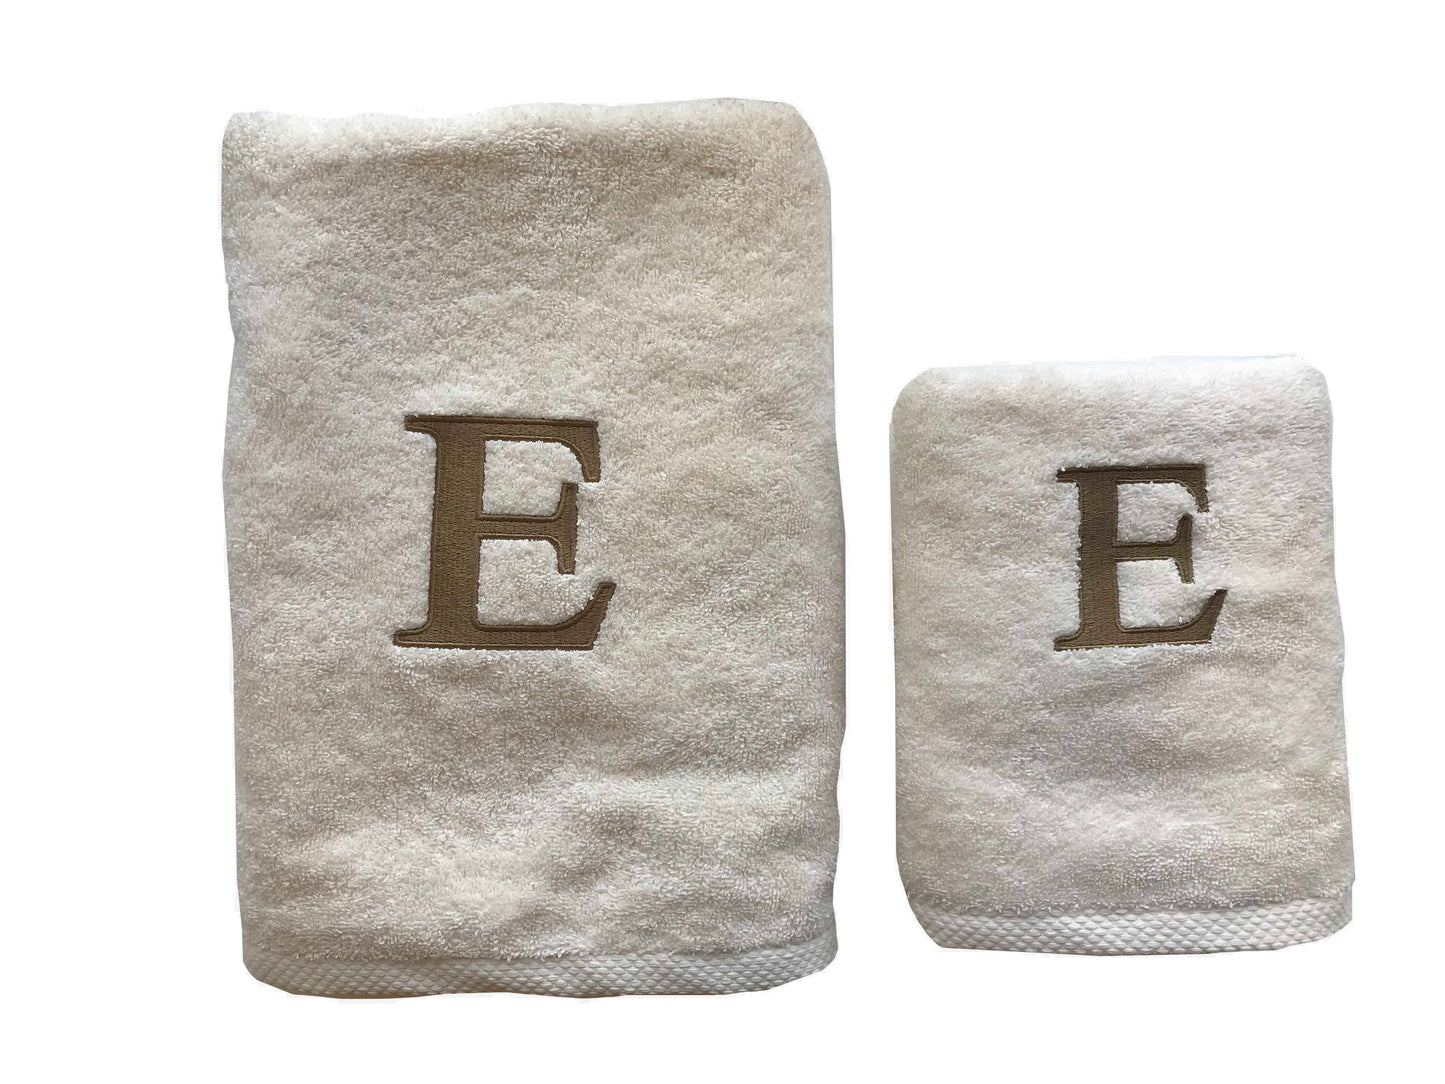 Premium Handtuch -  Mit edler Stickerei Buchstabe "E" - Vielseitig, Nachhaltig, Saugstark & Schnelltrocknend - 100% Baumwolle LMS-6642 Ecru